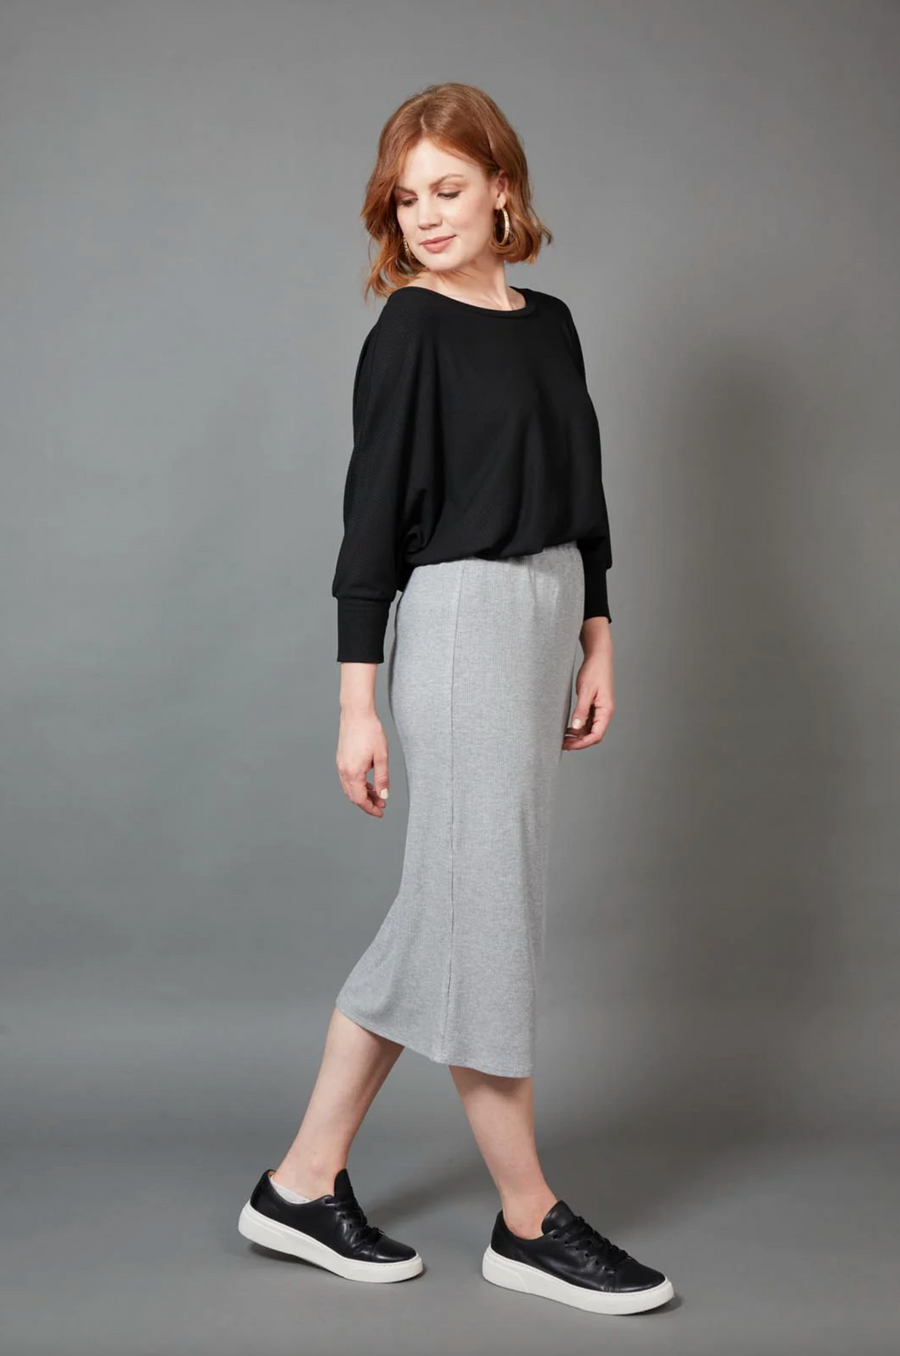 Studio Jersey Skirt - Gray